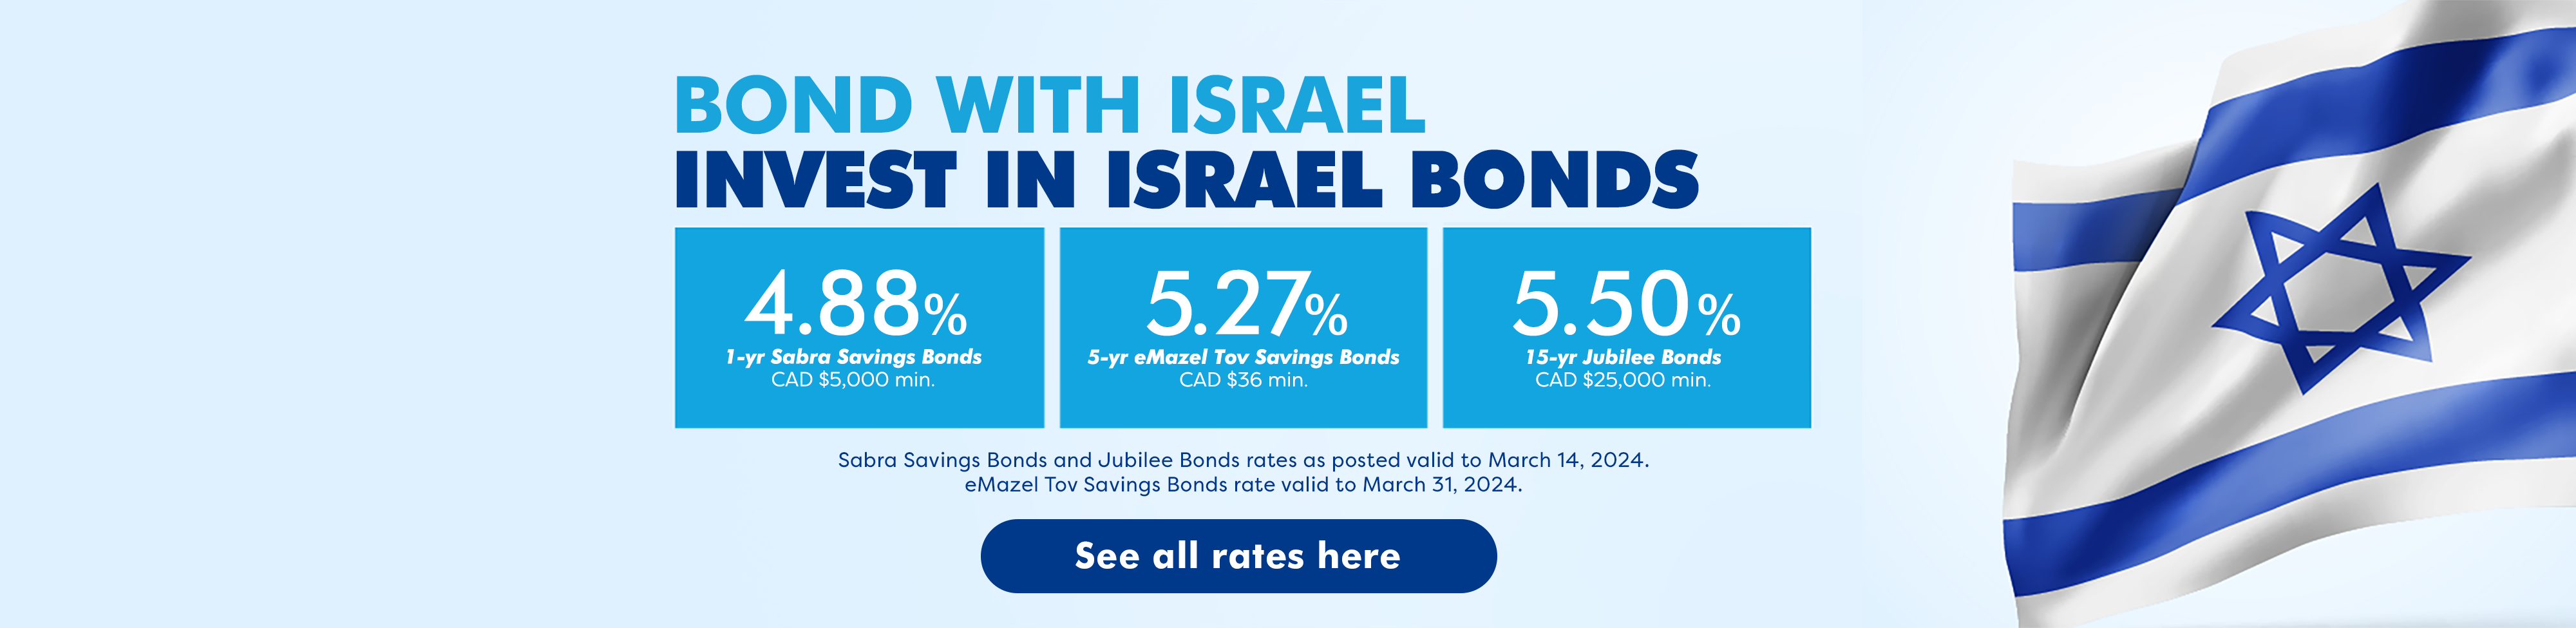 Israel Bonds Rates March 1-14 2024